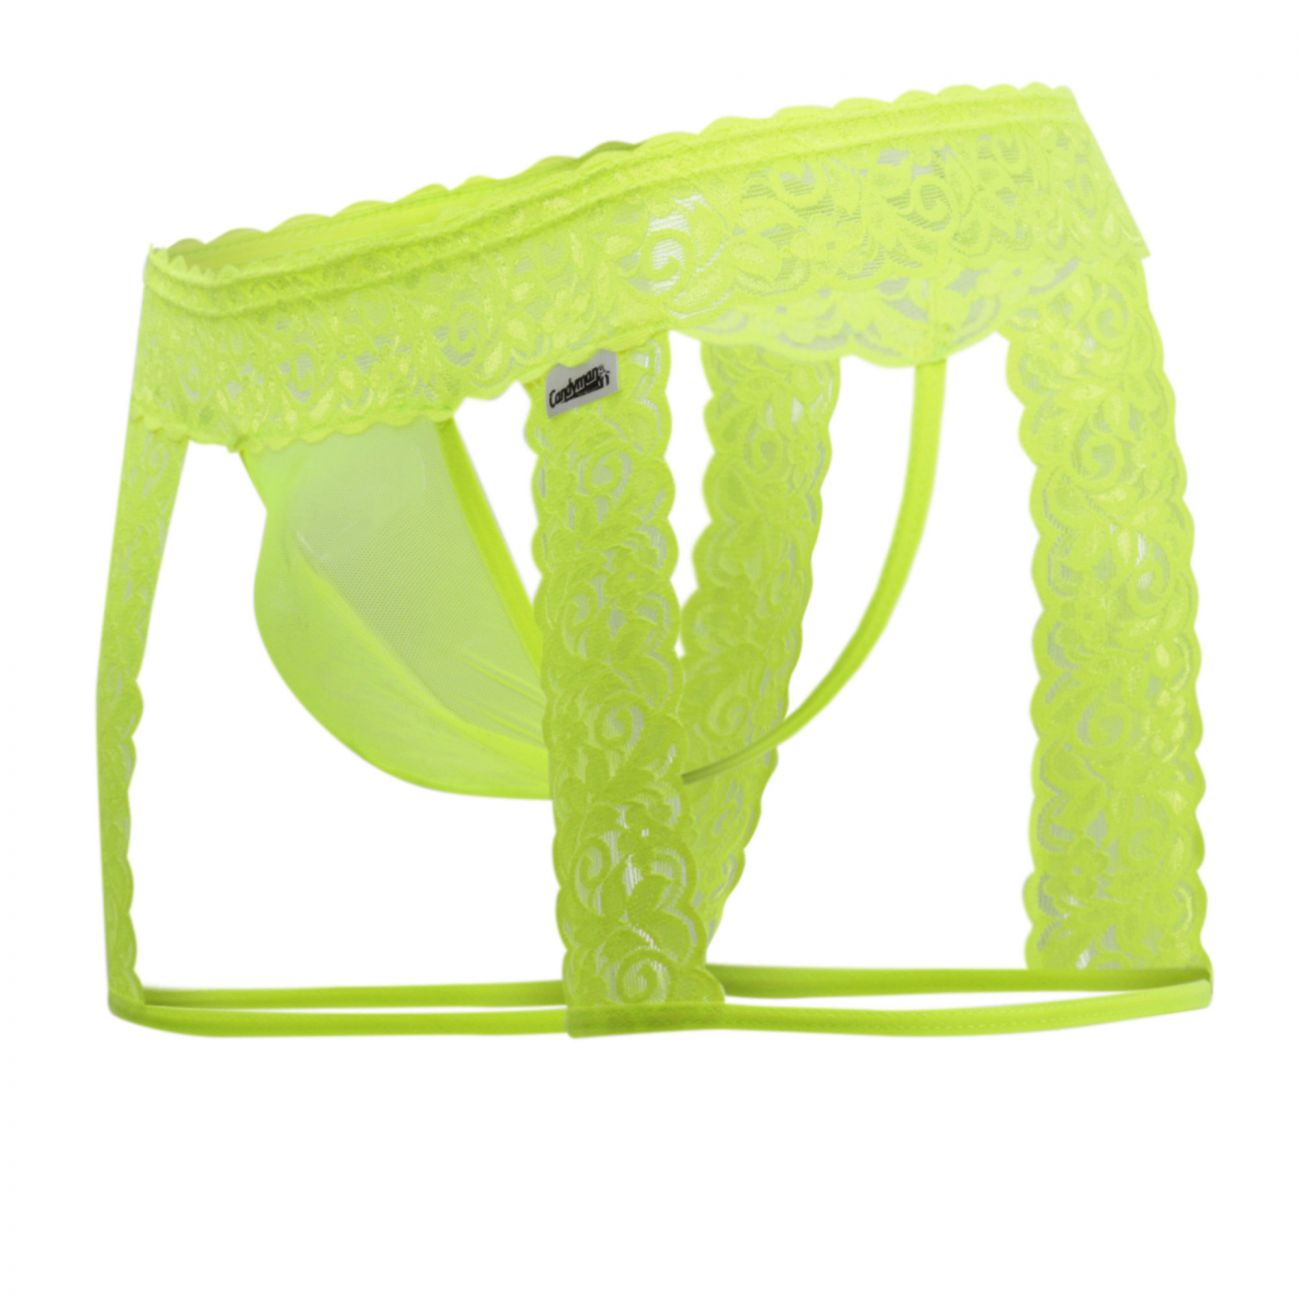 JCSTK - CandyMan 99369X Lace Thongs Hot Yellow Plus Sizes